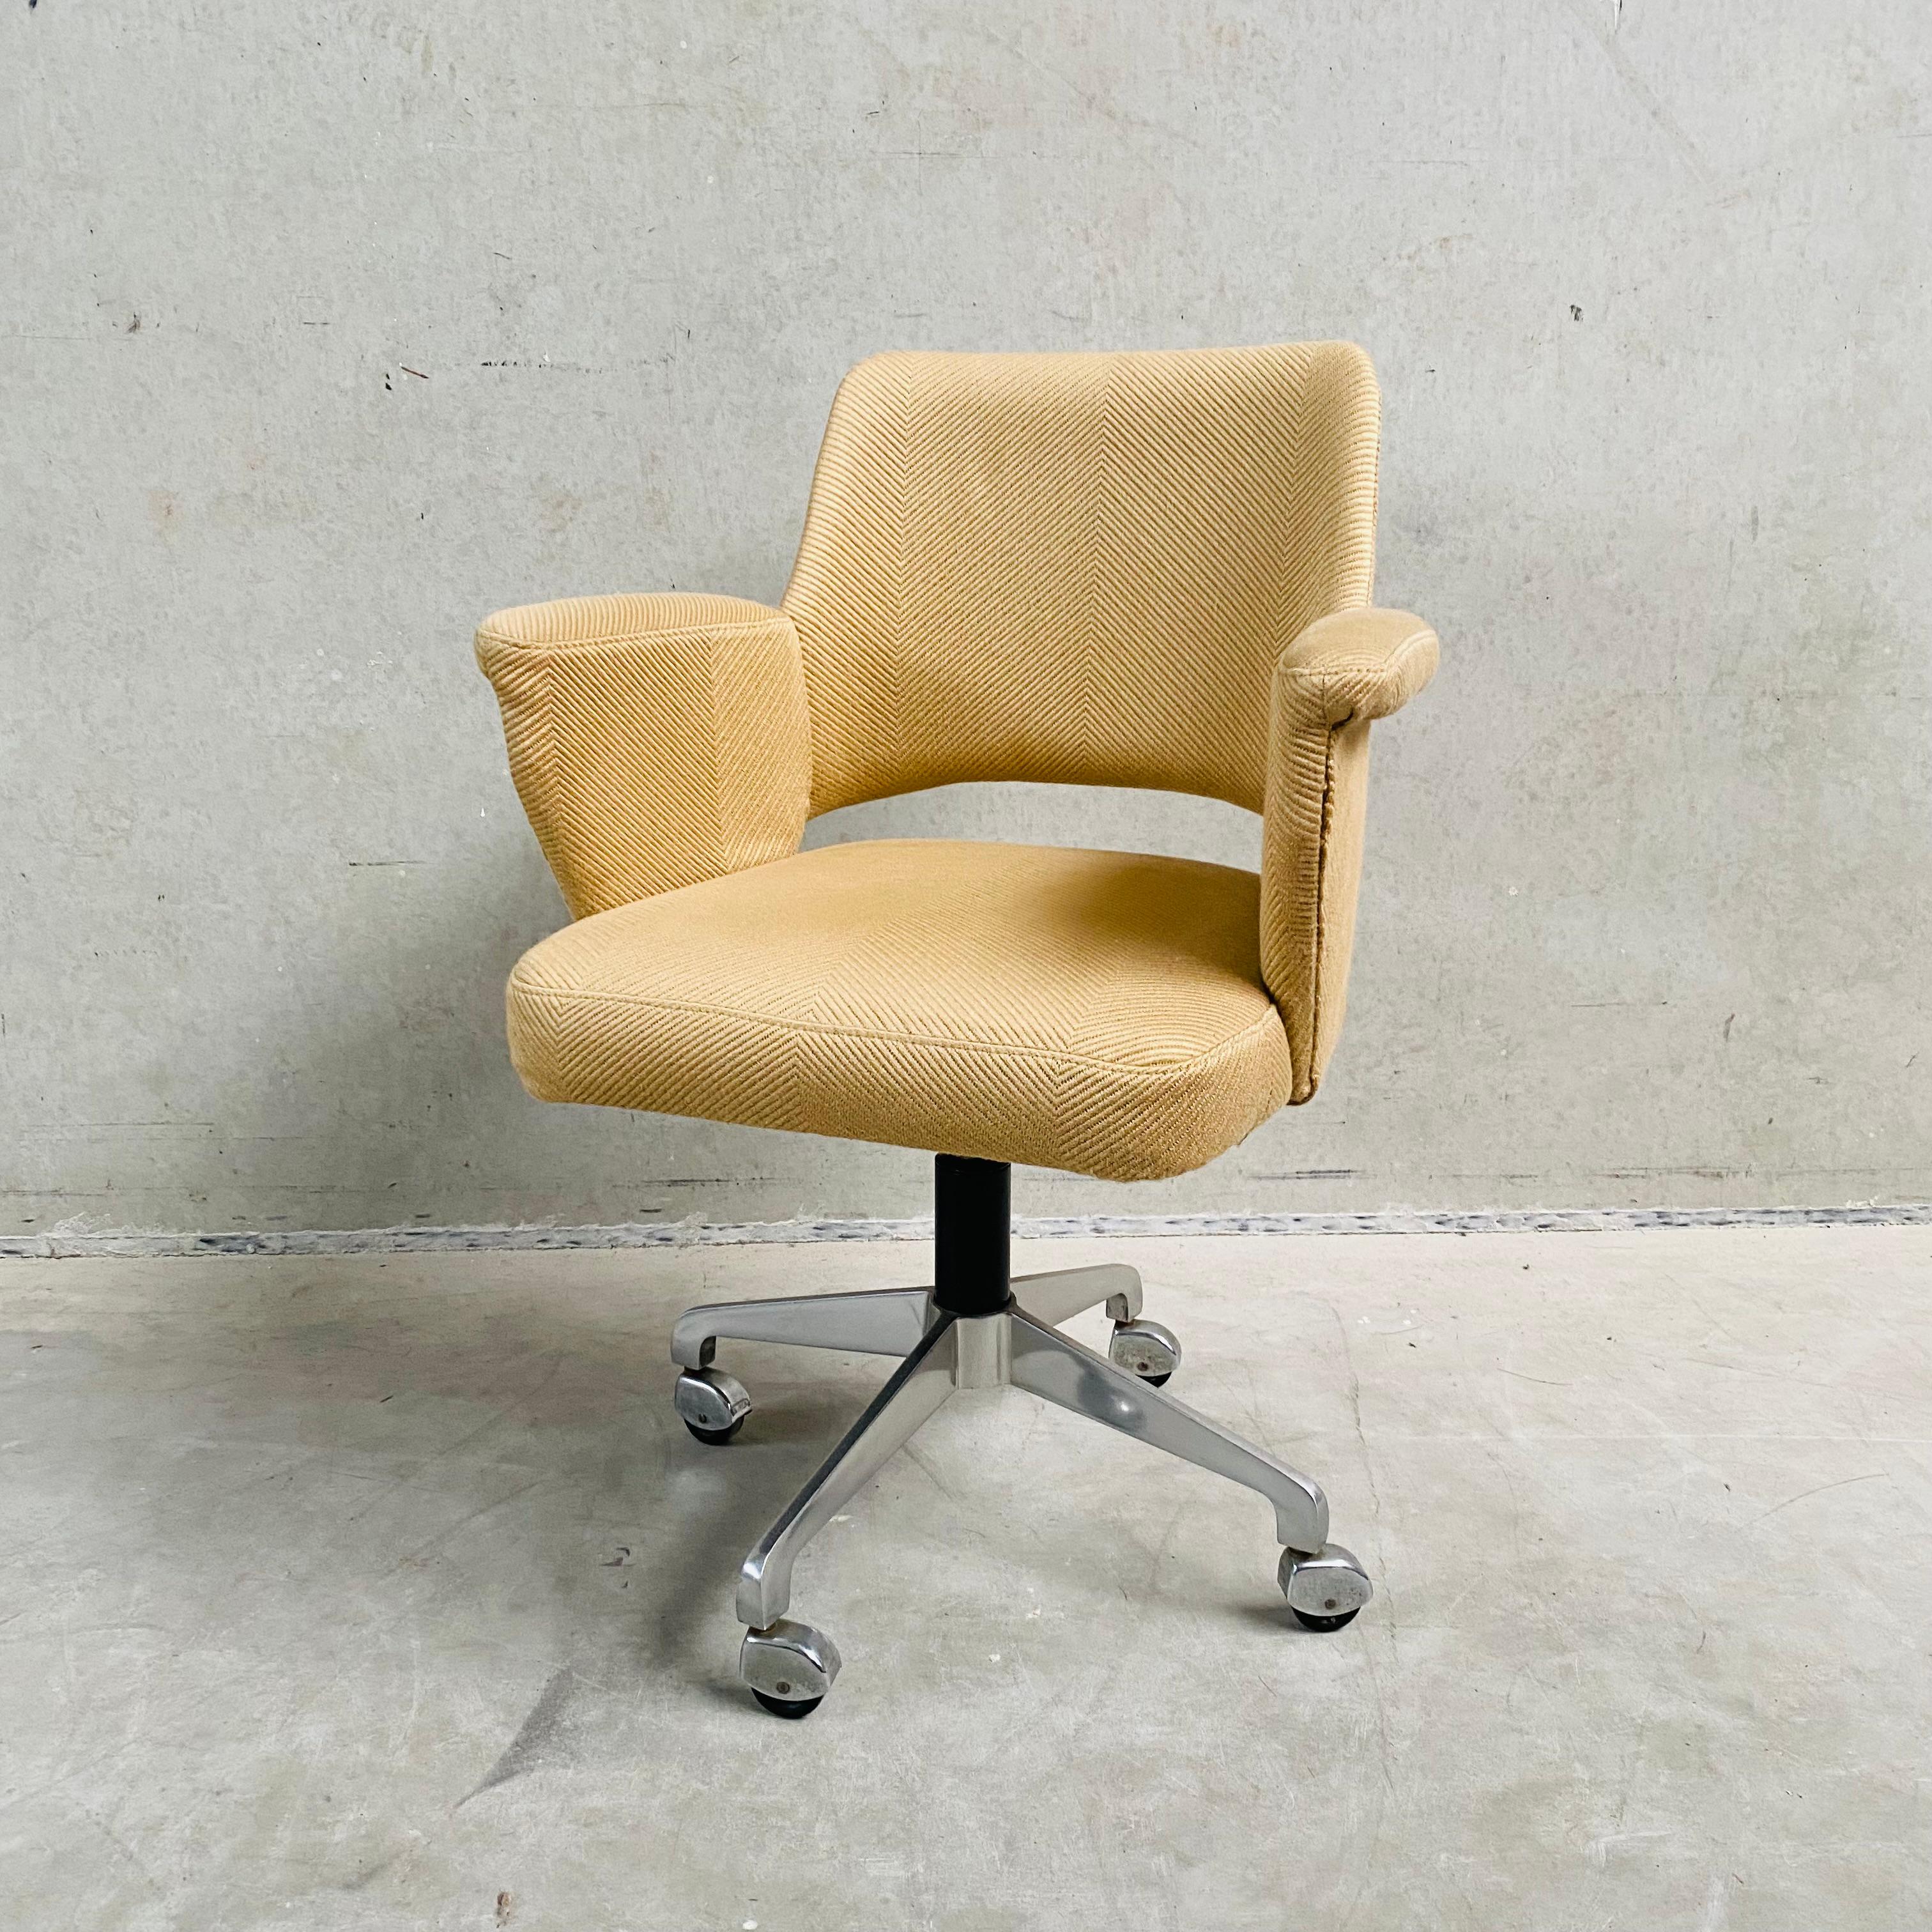 Der Mid-Century Swiffle Desk Chair von Hein Salomonson für AP Originals 1960 ist ein zeitloses Stück, das ikonisches Design und unvergleichlichen Komfort nahtlos vereint. Dieser mit Präzision und Stil gefertigte Stuhl ist ein Beweis für den